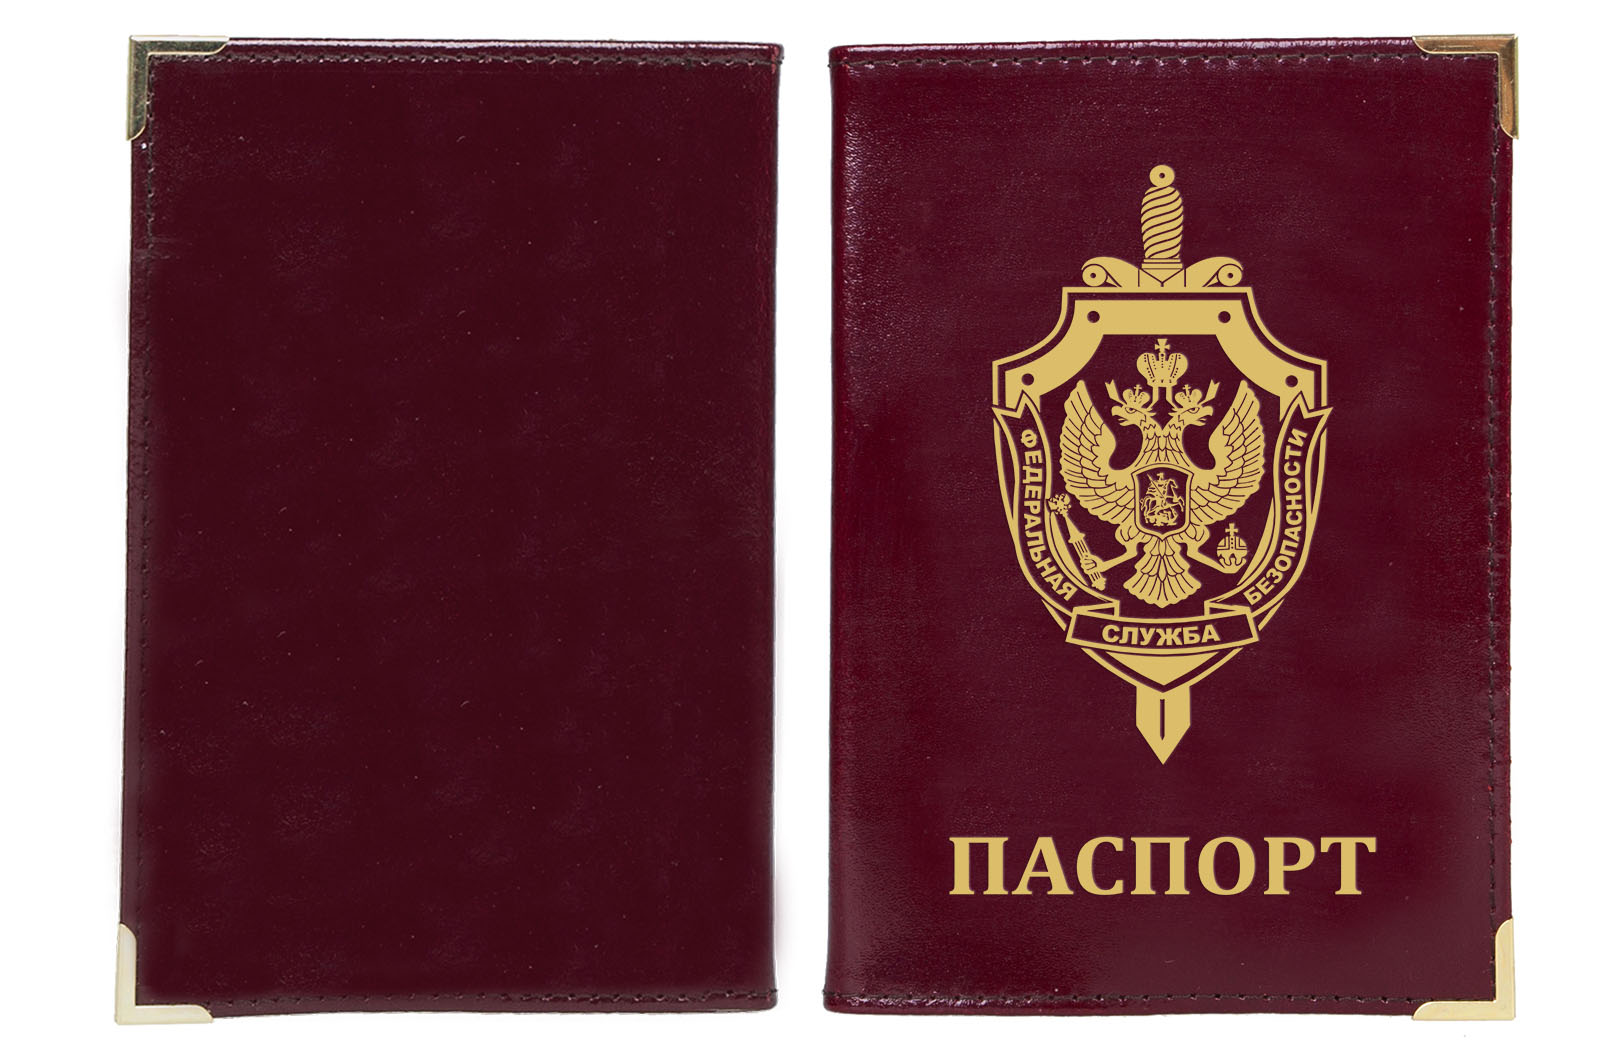 Обложка на паспорт с тиснением эмблемы ФСБ 